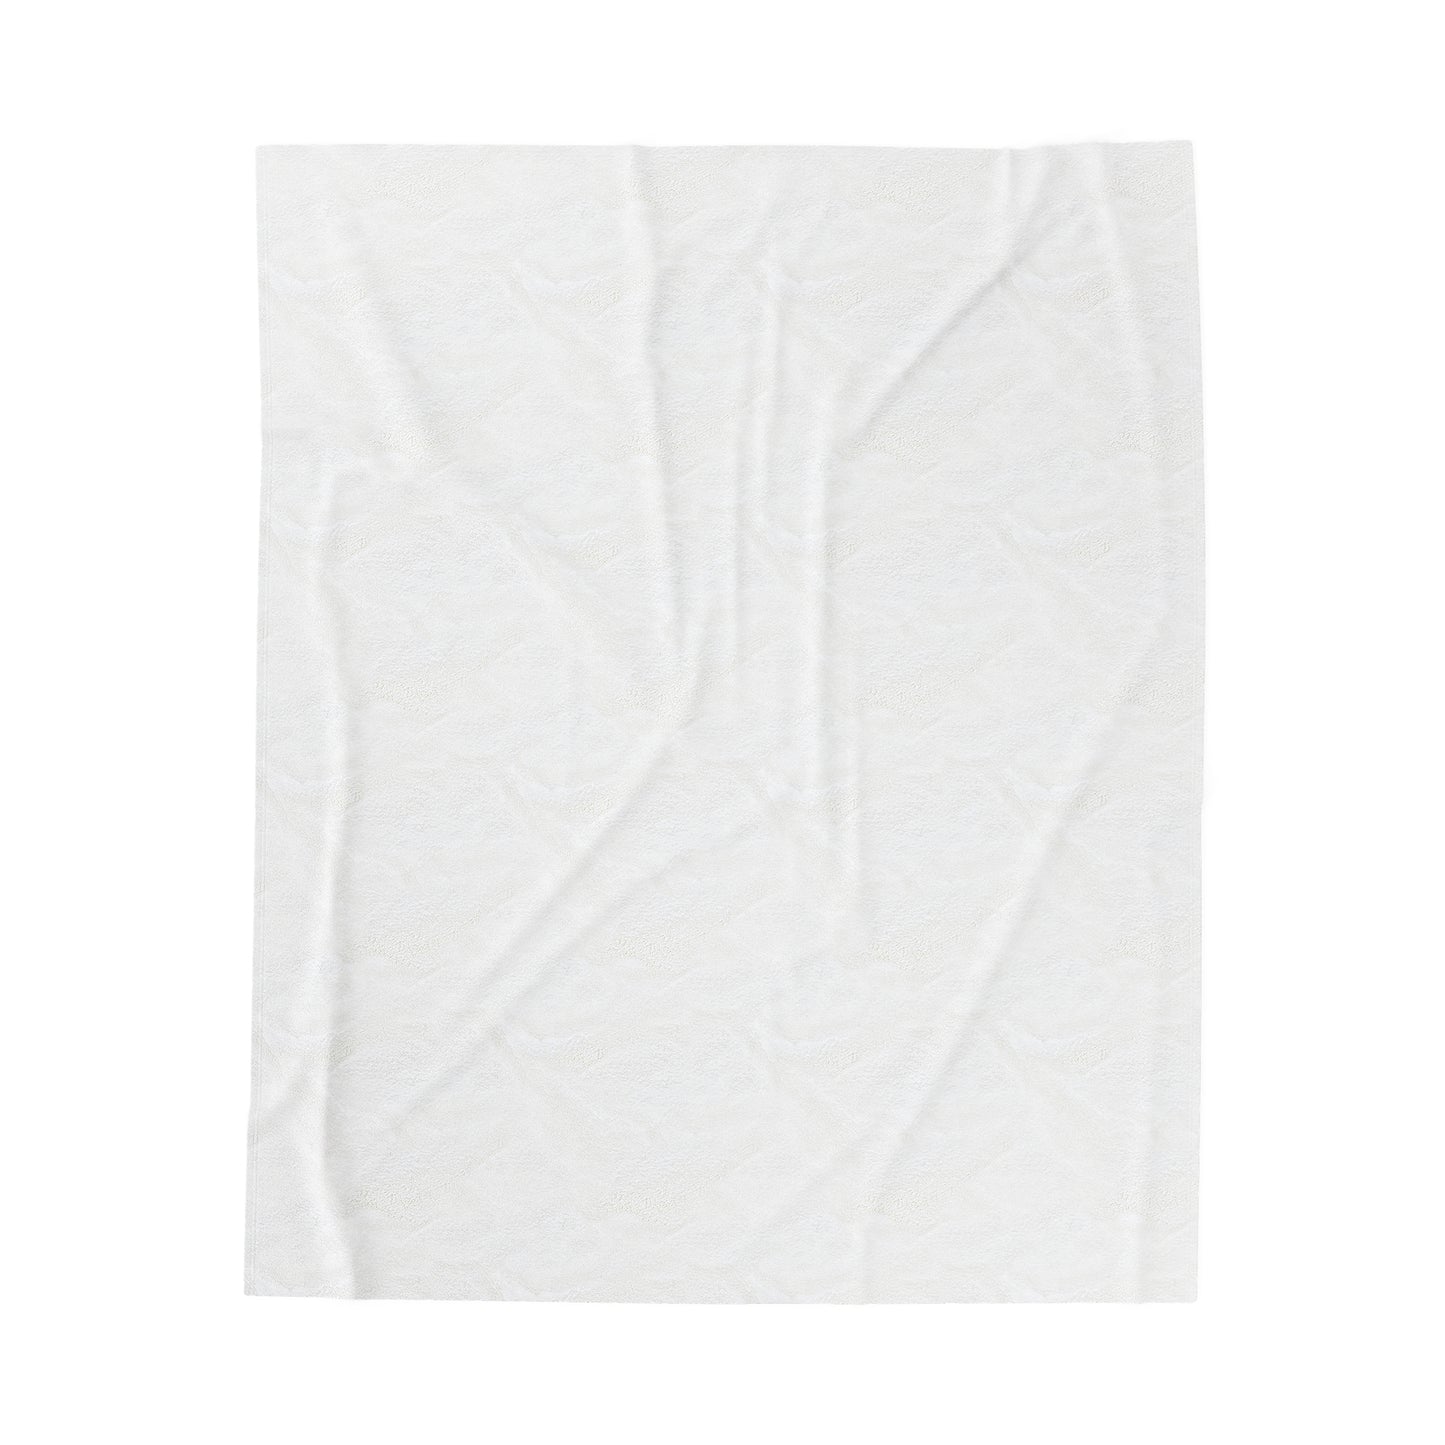 Basset Hounds (various coats pattern) - Velveteen Plush Blanket